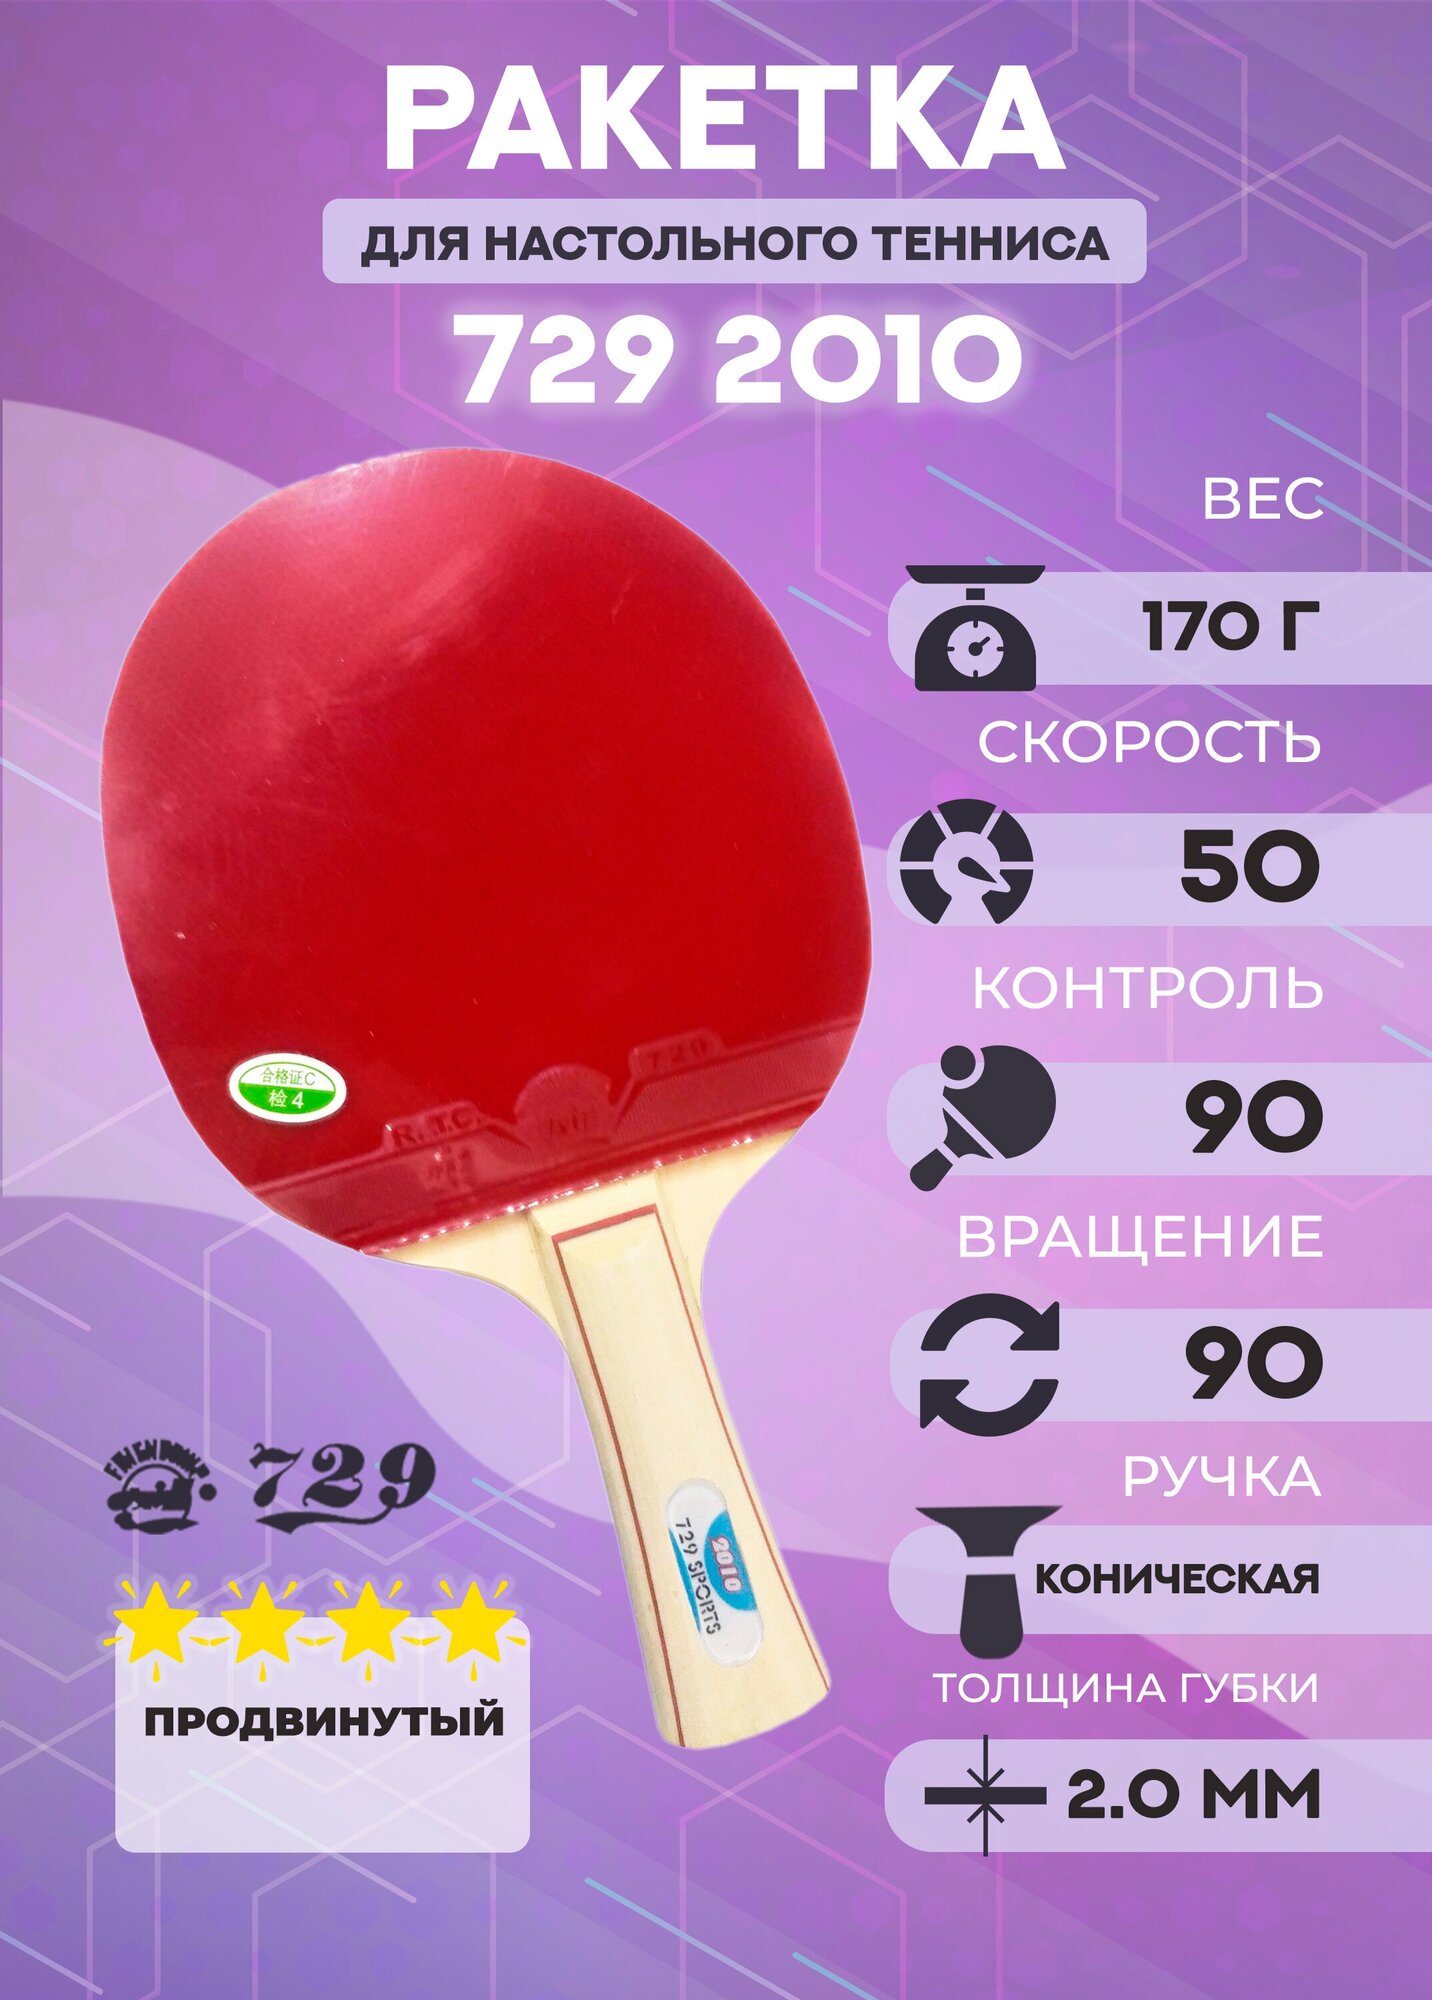 Ракетка для настольного тенниса Friendship 729 2010